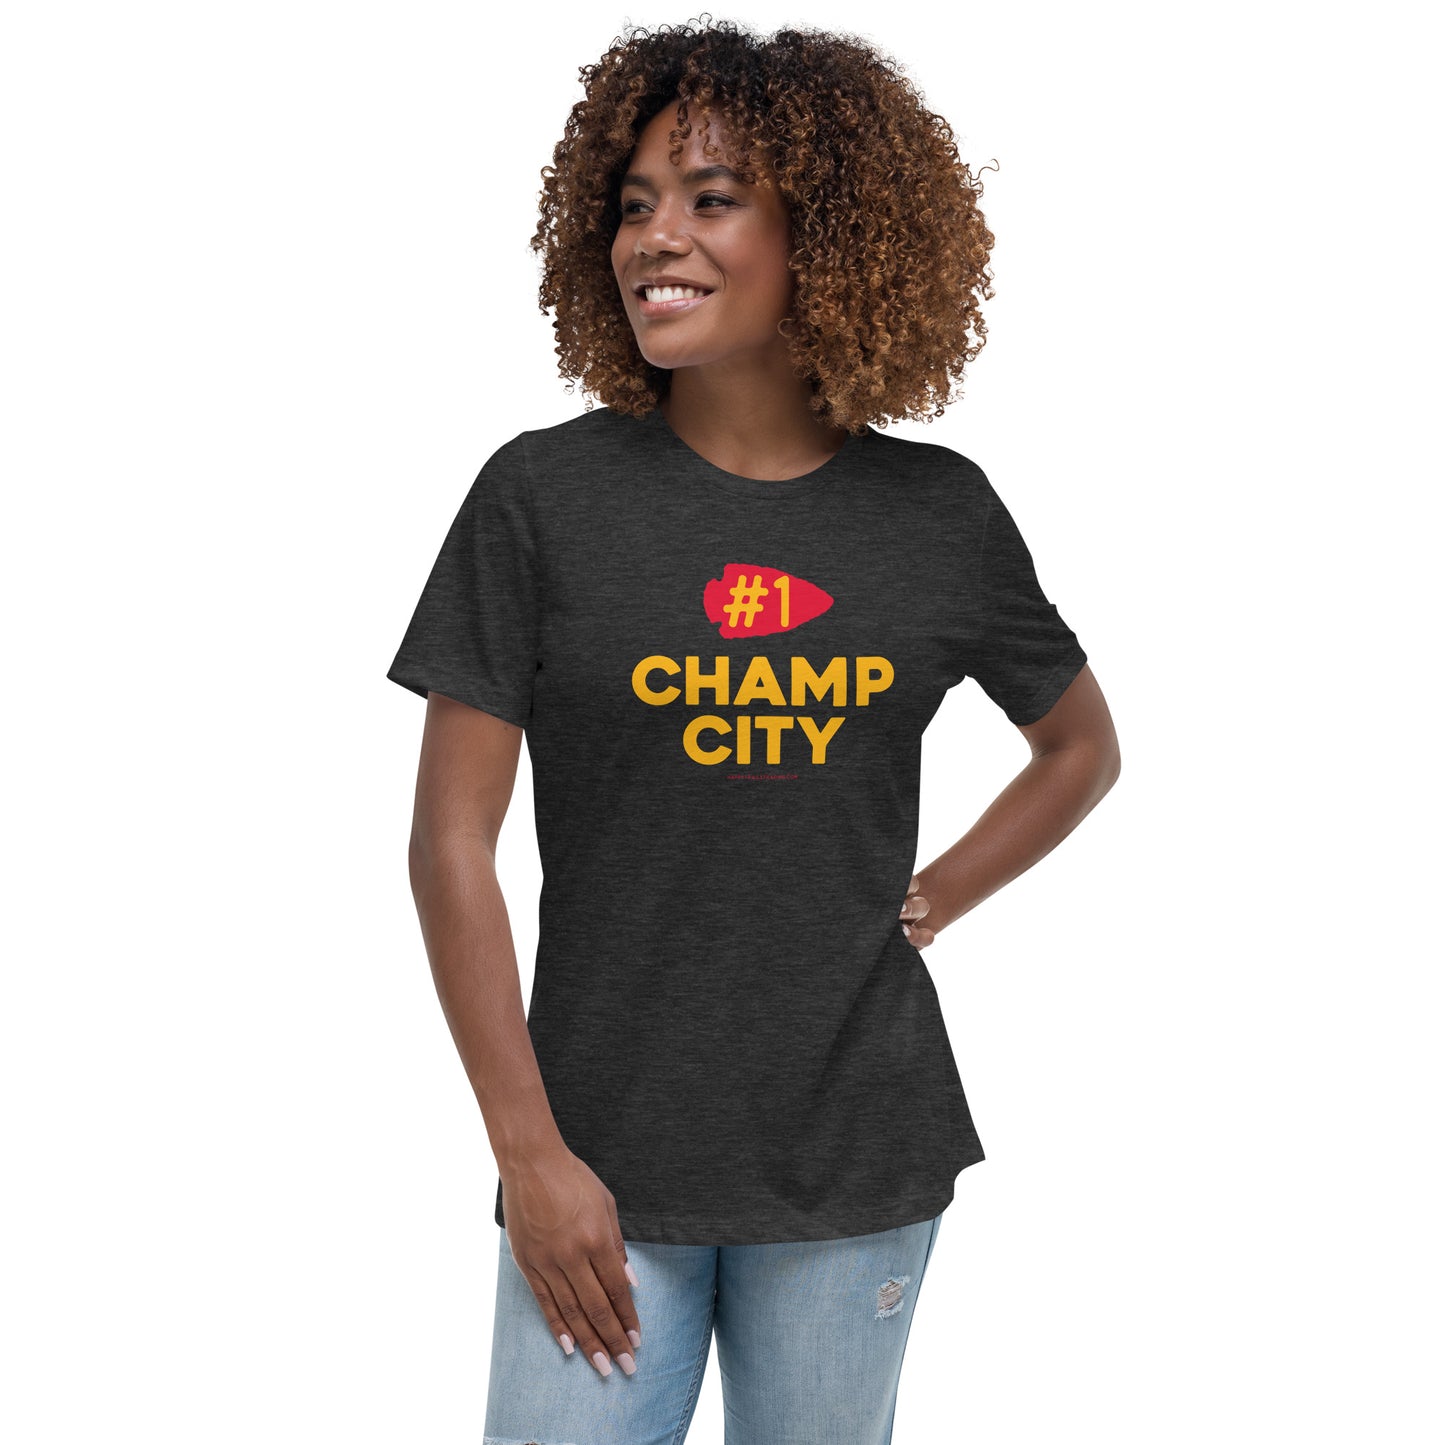 KC Champ City - Women's Relaxed T-Shirt